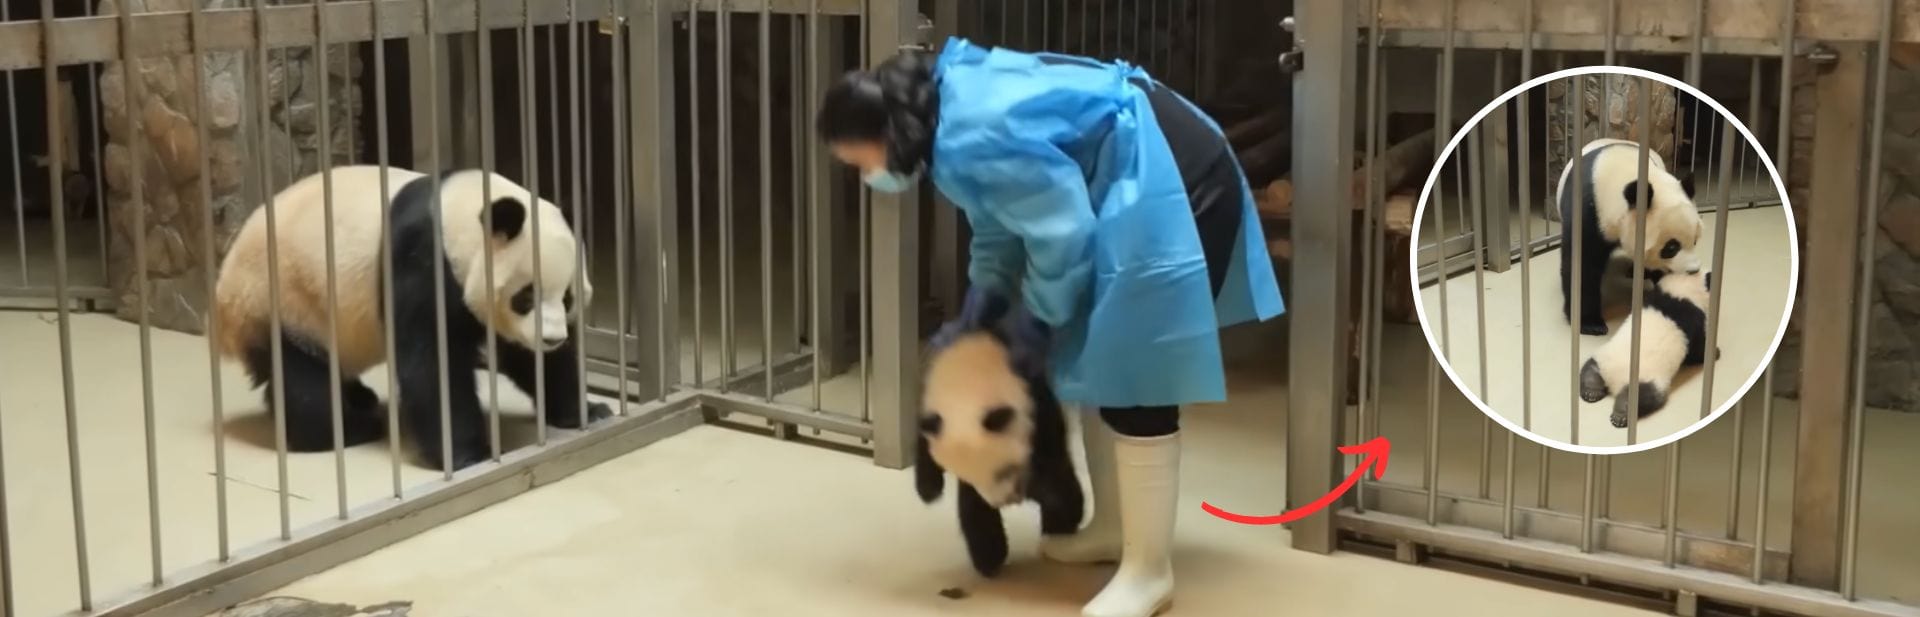 Mama Panda Keeps a Close Eye As Baby Makes a Sneaky Getaway